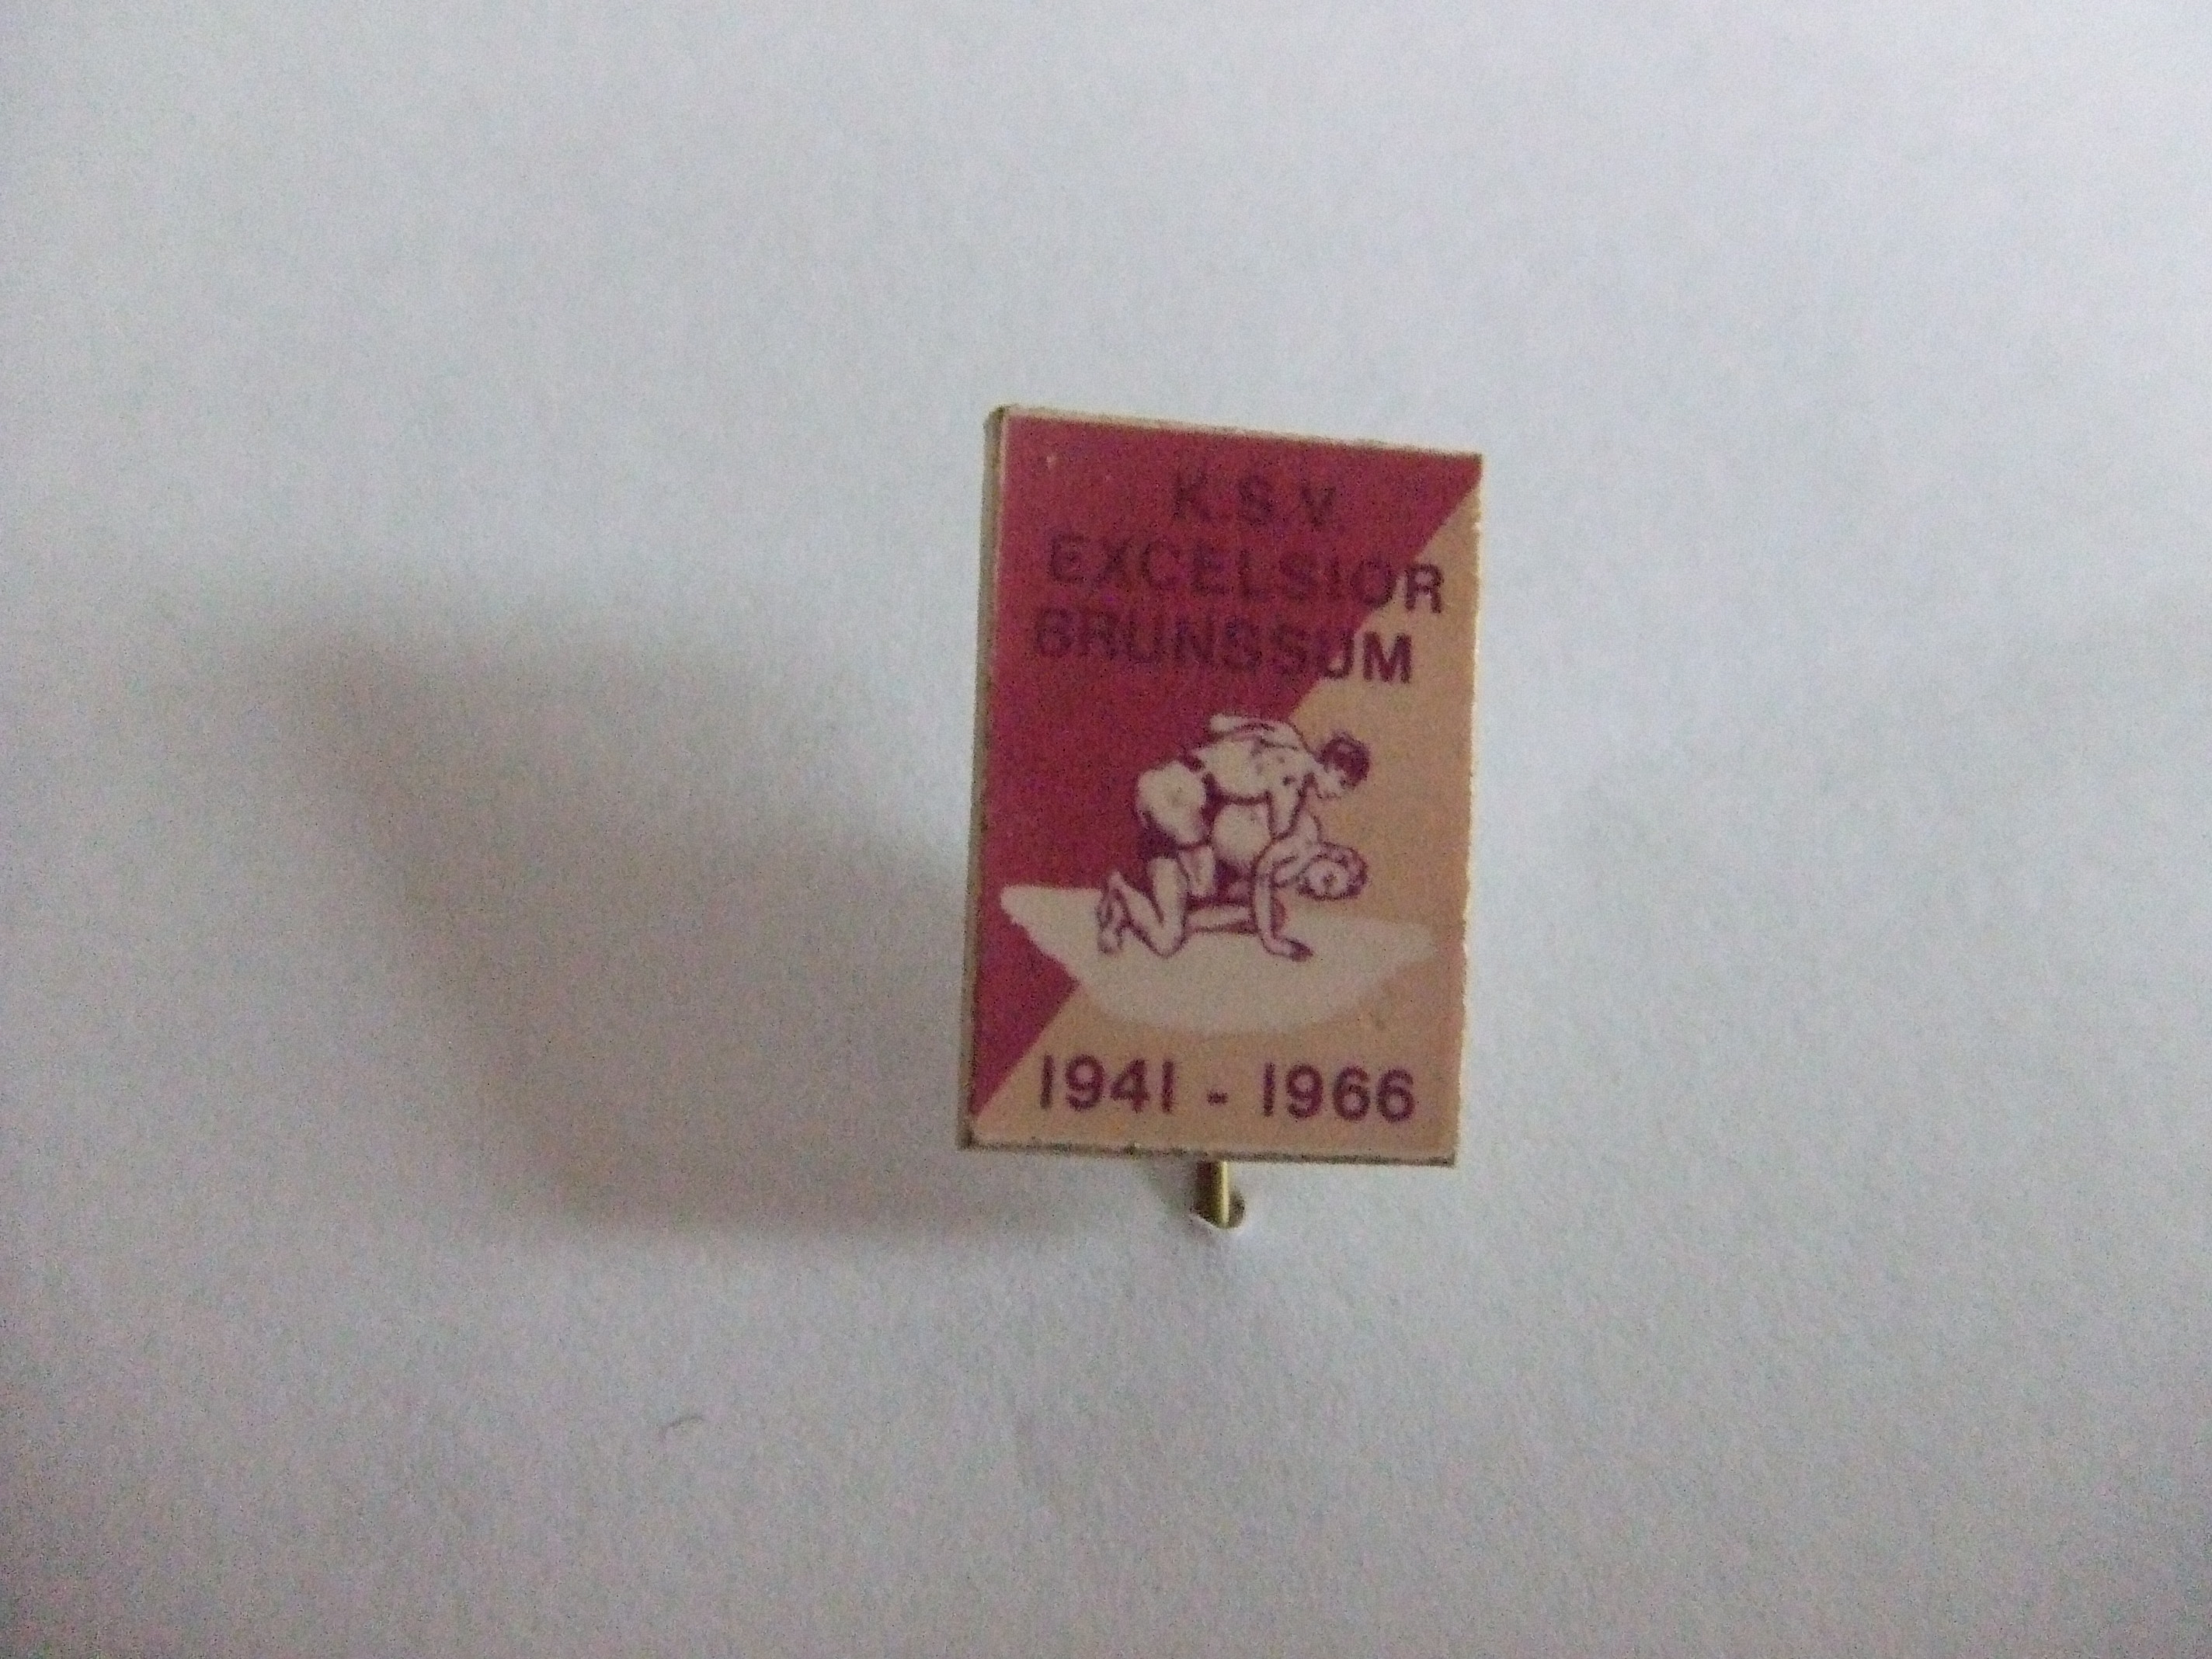 K.S.V. Excelsior Brunssum 1941-1961 Judo